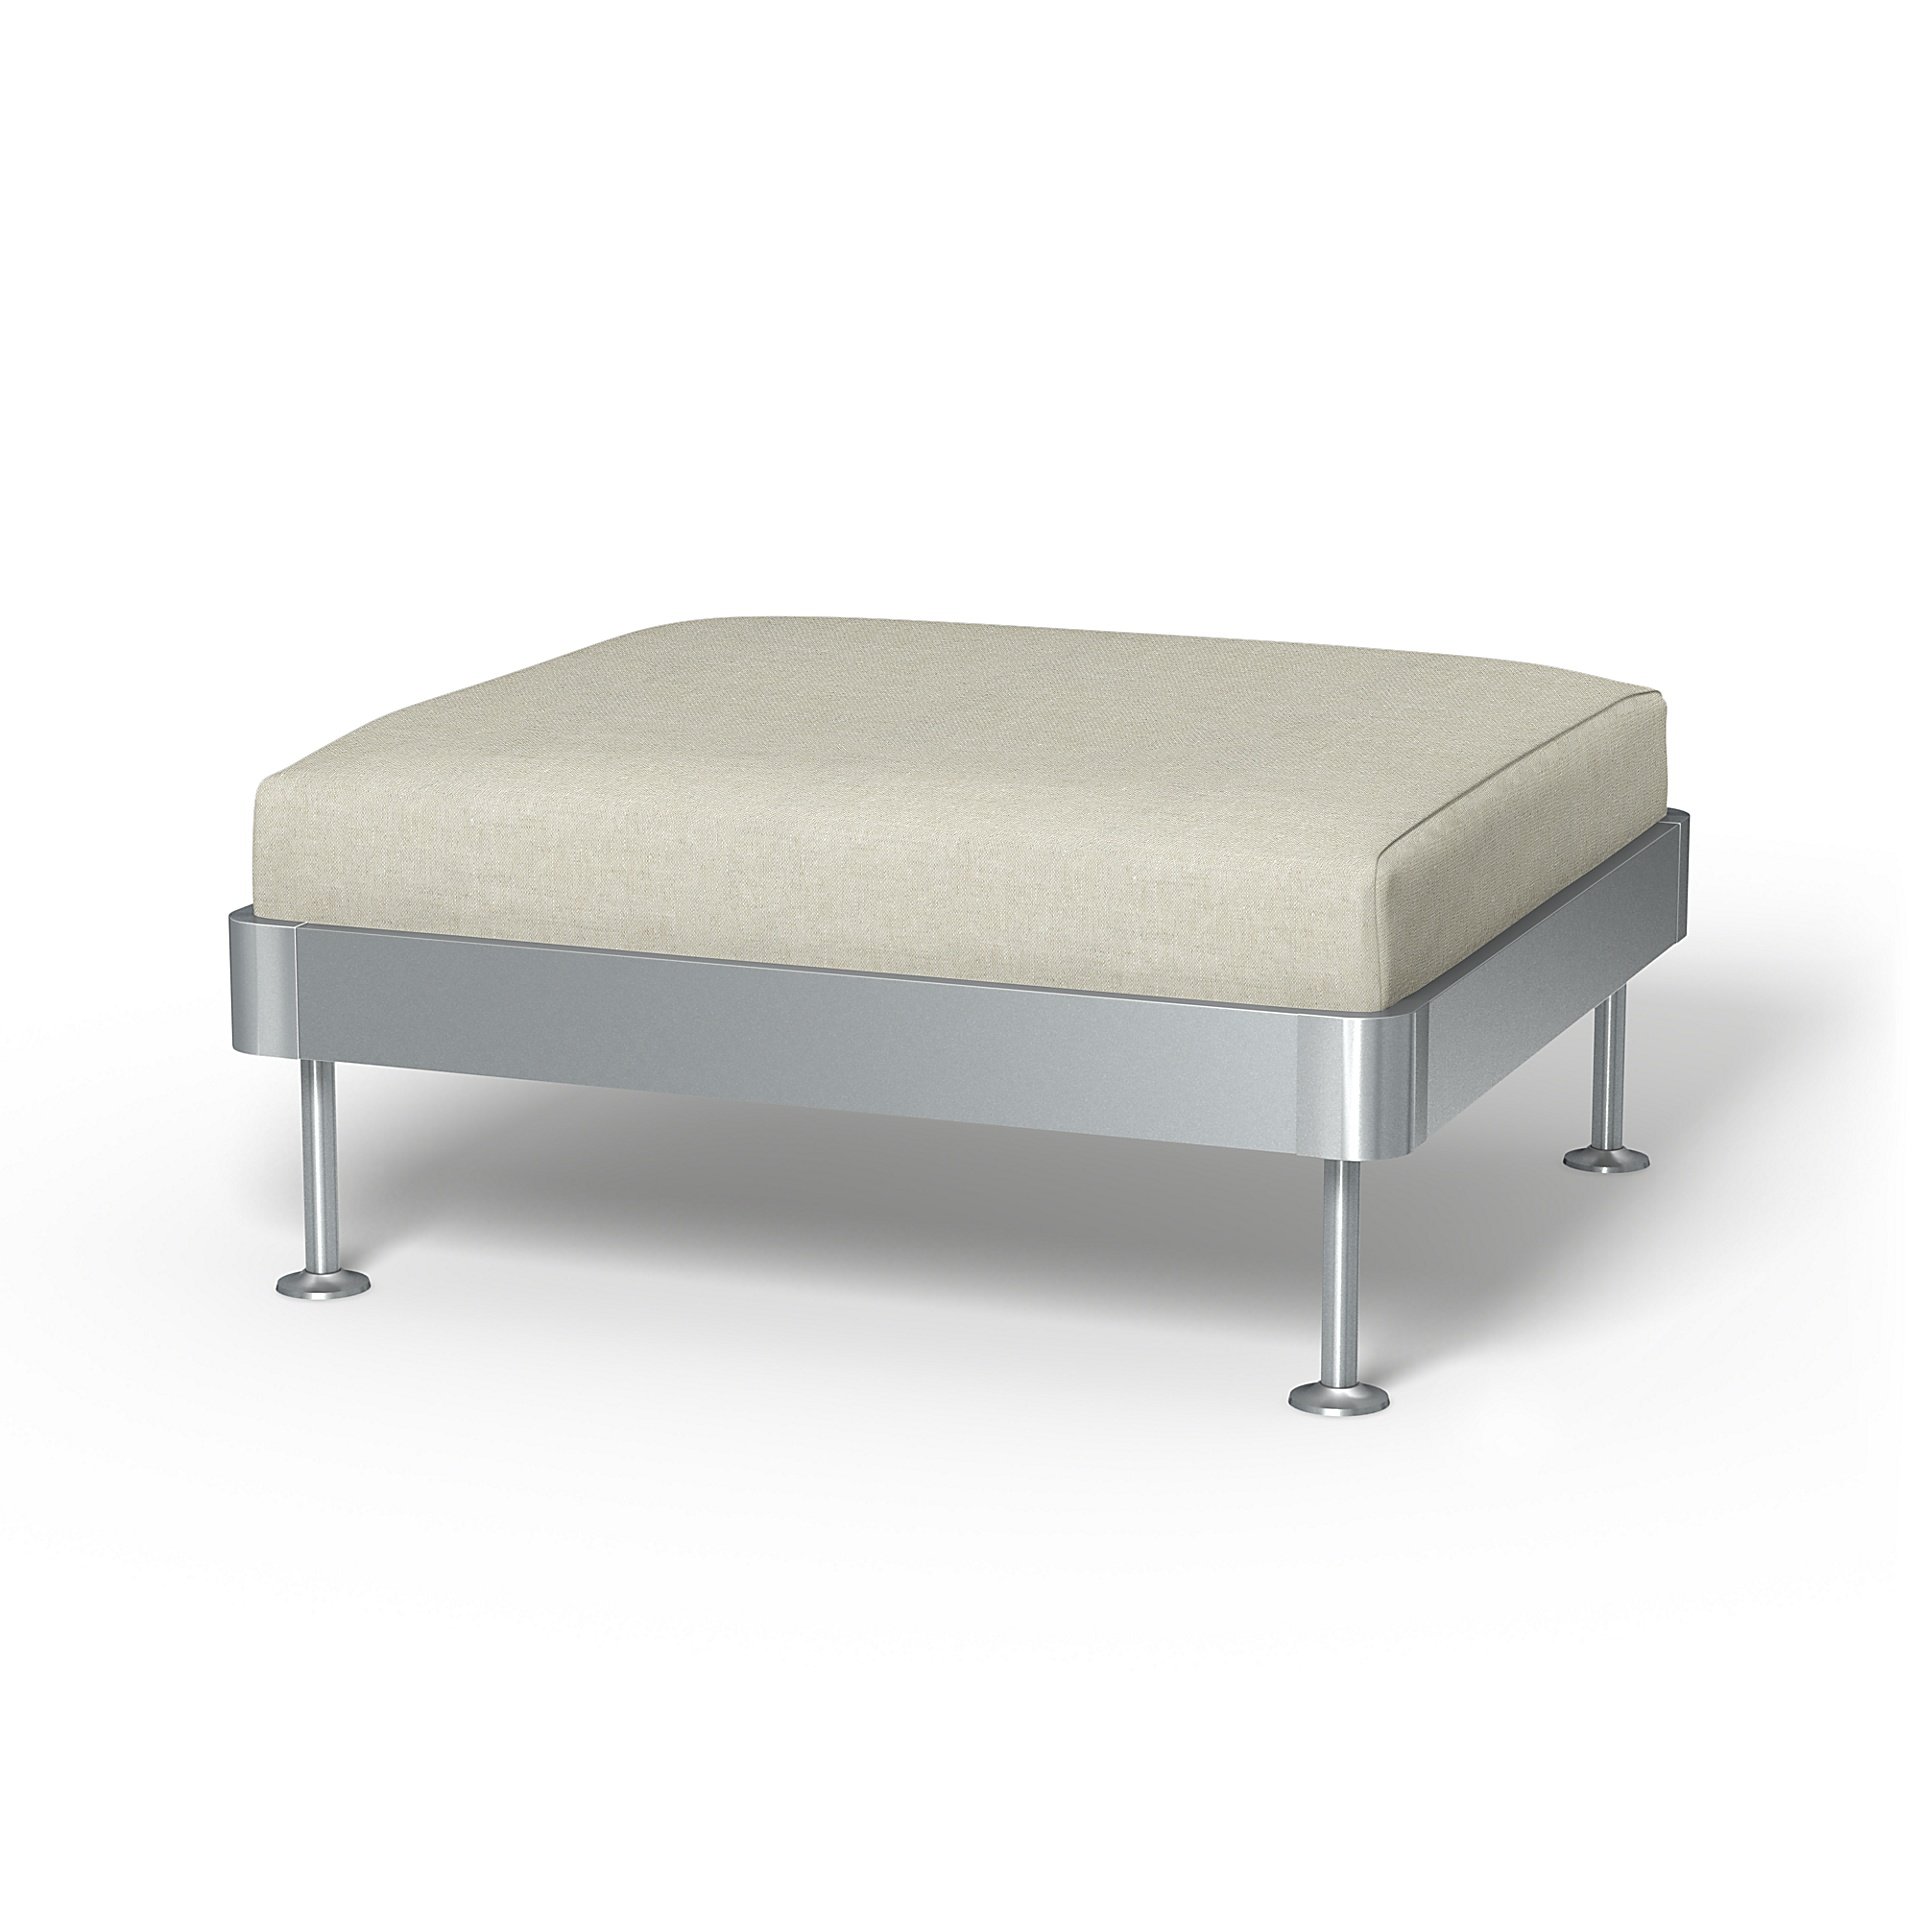 IKEA - Delaktig 1 Seat Platform Cover, Natural, Linen - Bemz